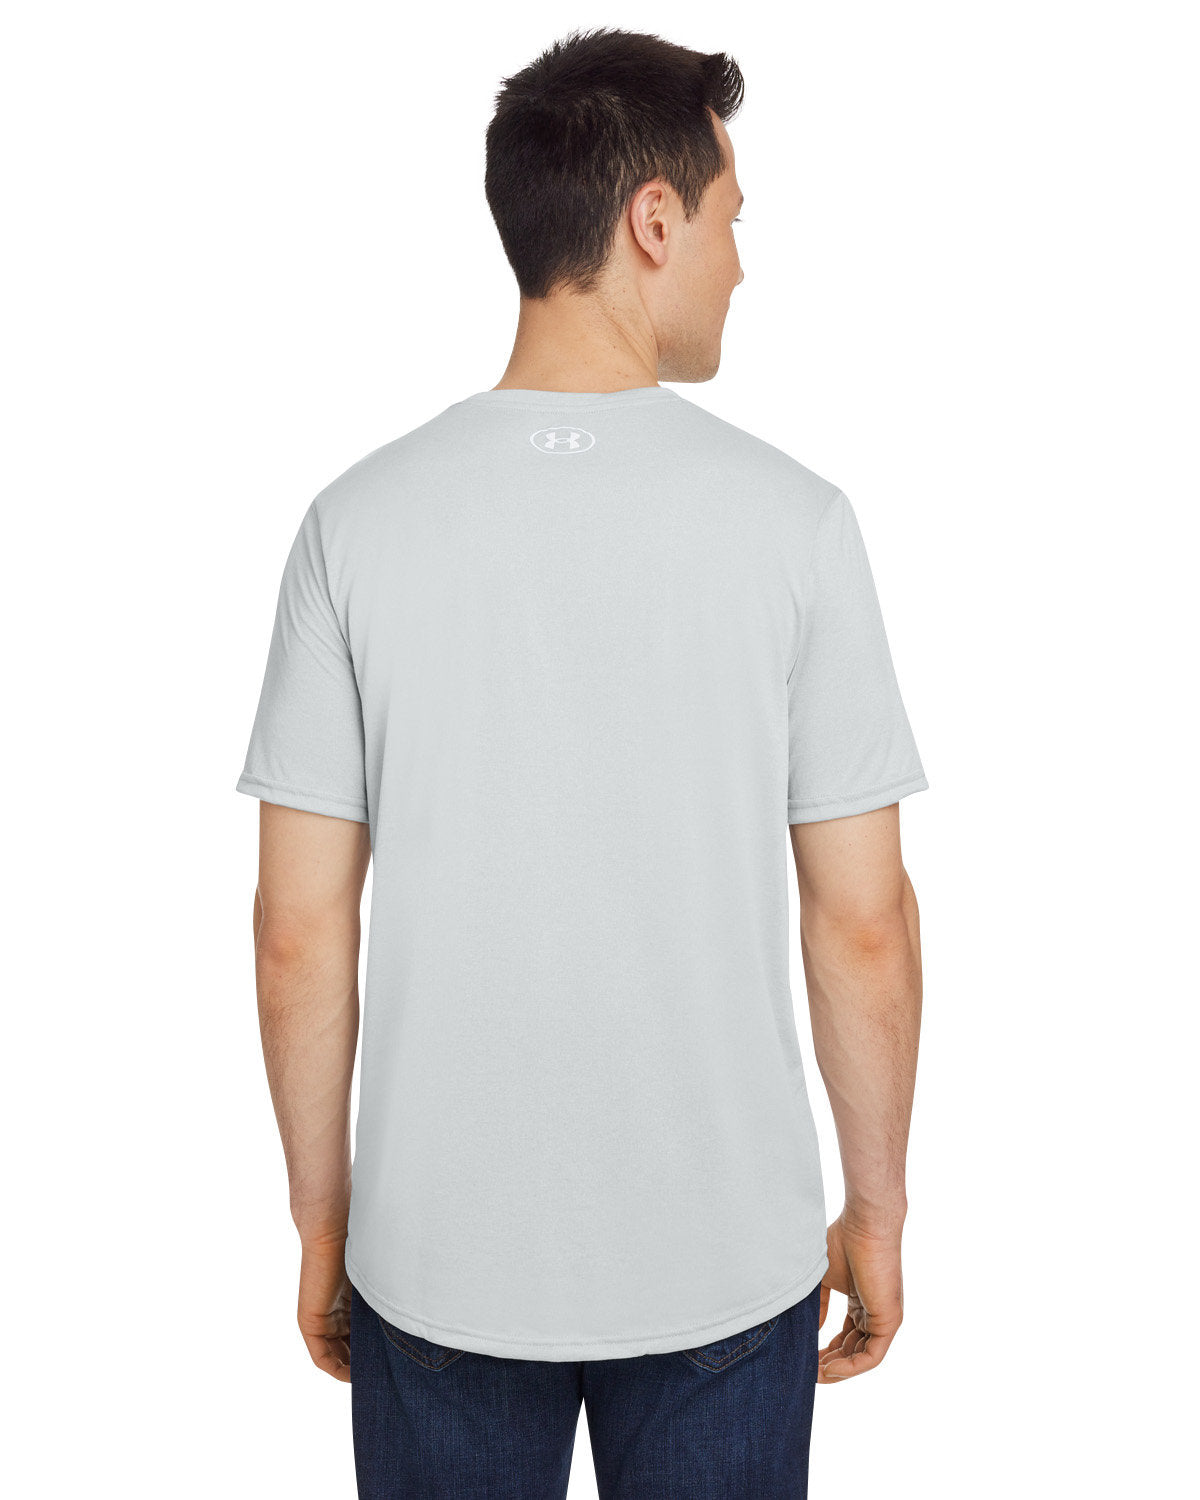 Under Armour Men's Tech T-Shirt, Medium Grey Light